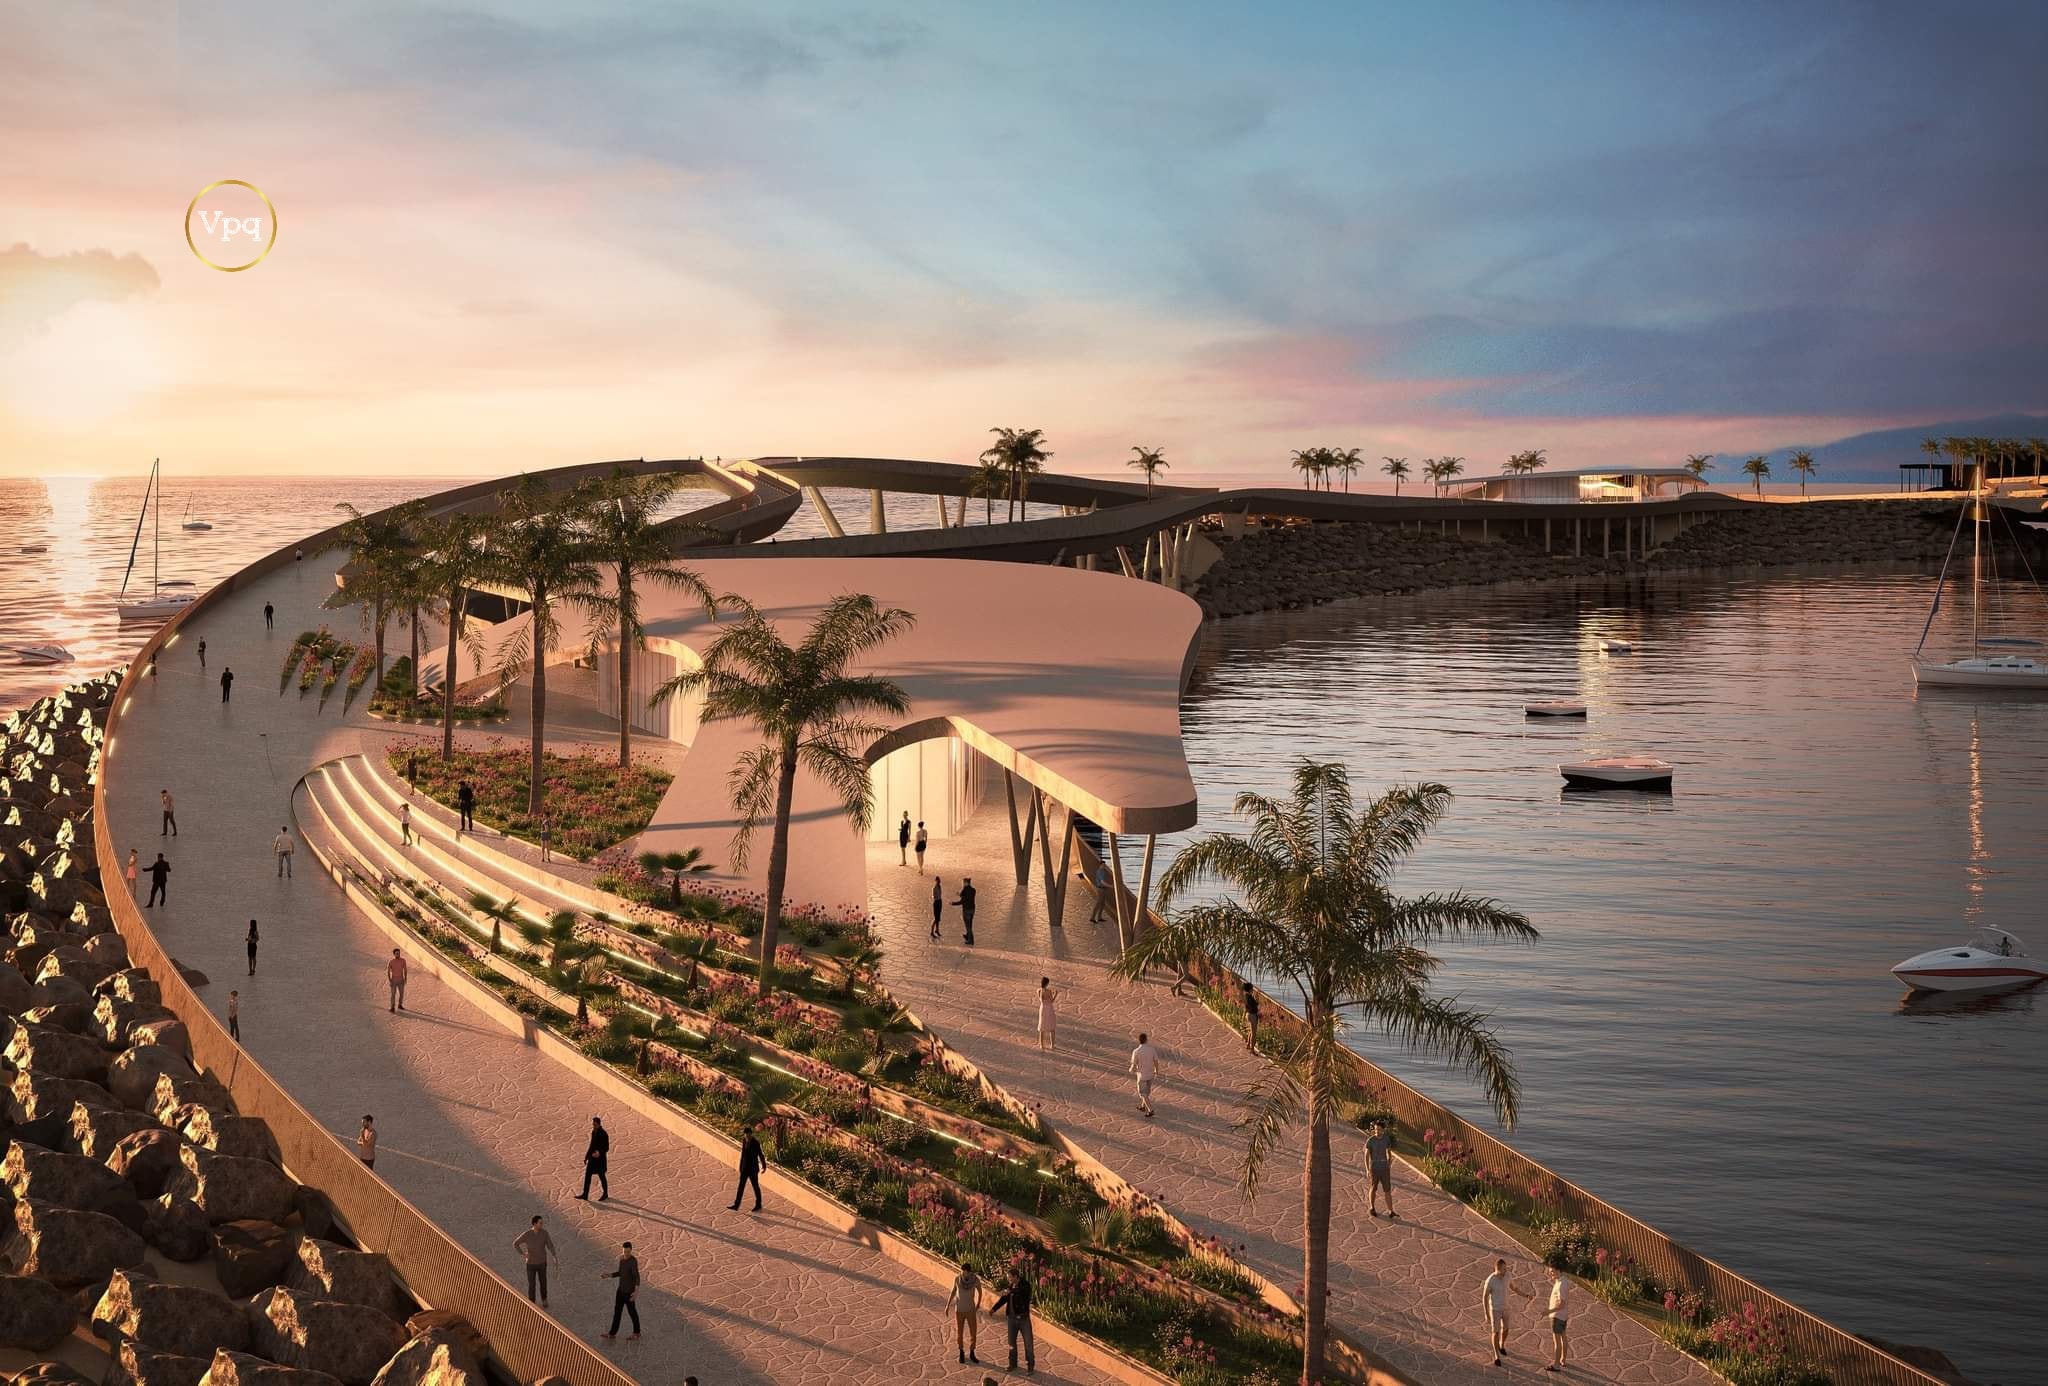 Cầu Hôn sẽ trở thành biểu tượng mới của Đảo Ngọc như những Tháp Đồng Hồ hay thị trấn Địa Trung Hải.